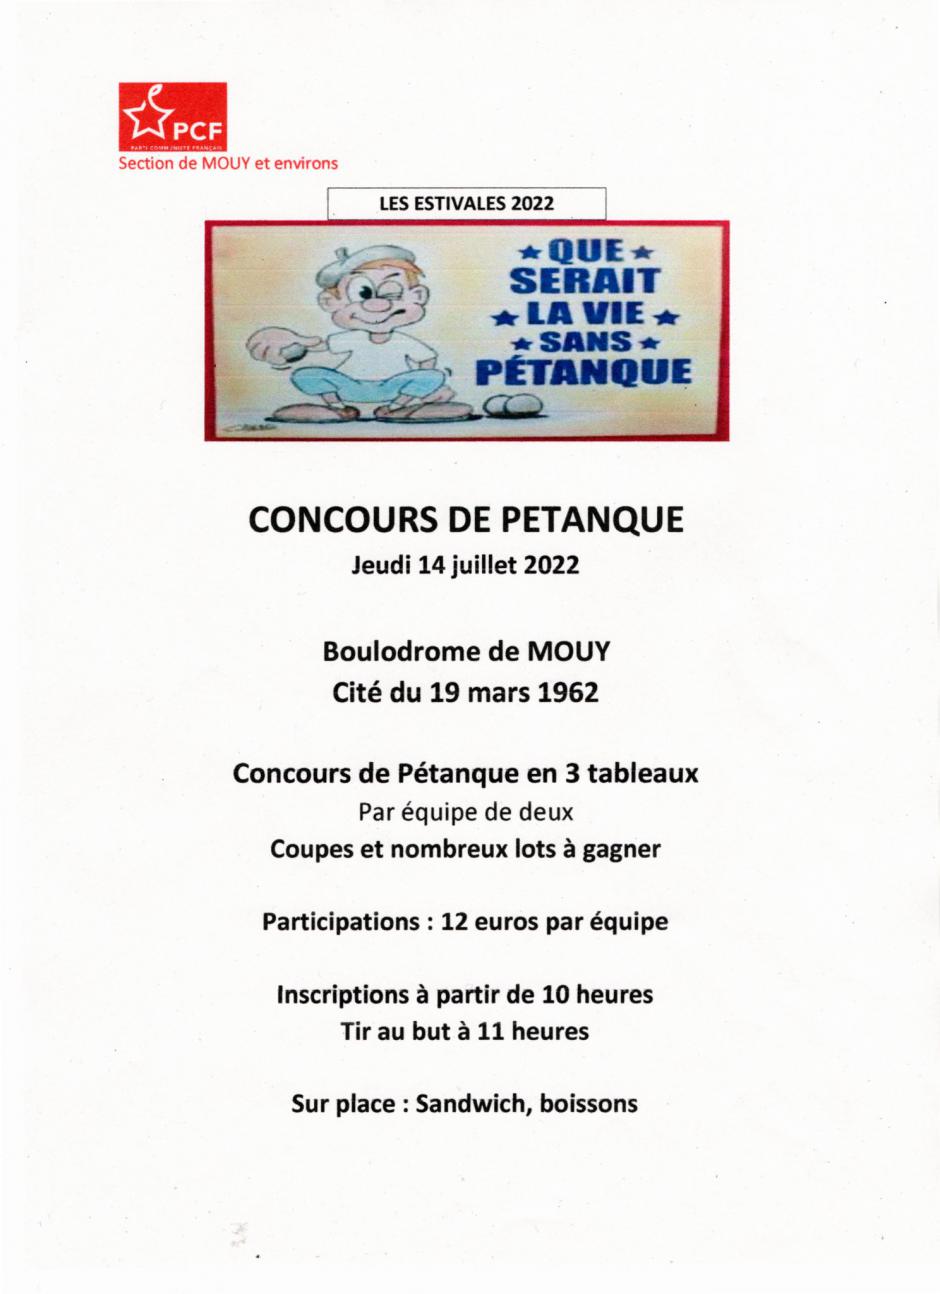 14 juillet, Mouy - Concours de pétanque de la section PCF de Mouy